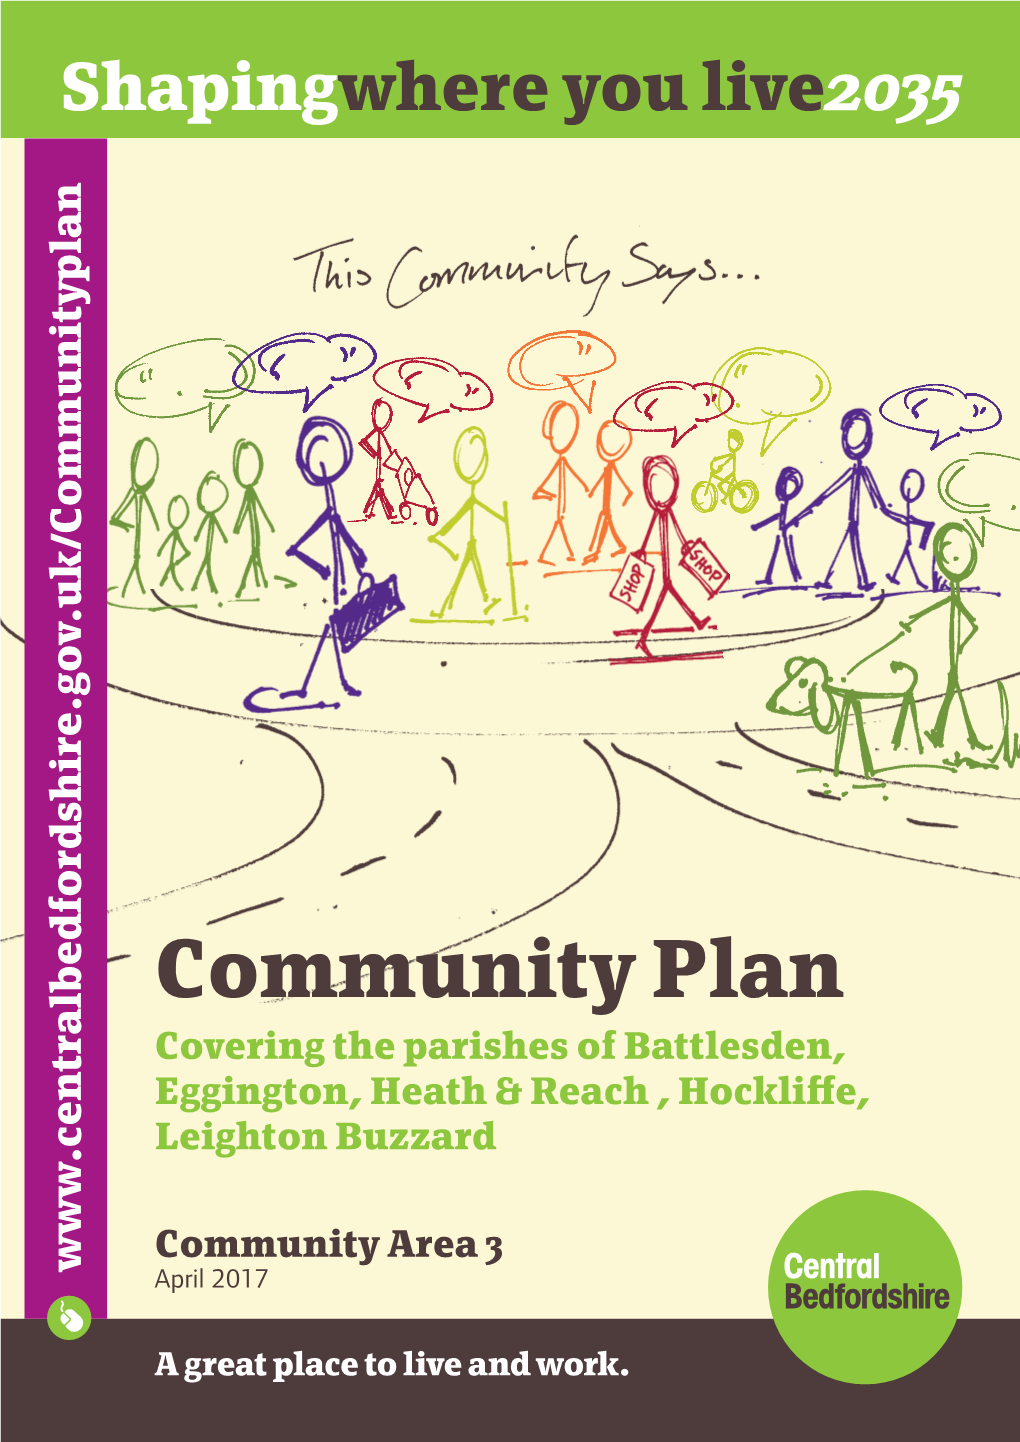 Central Bedfordshire Council Community Plan